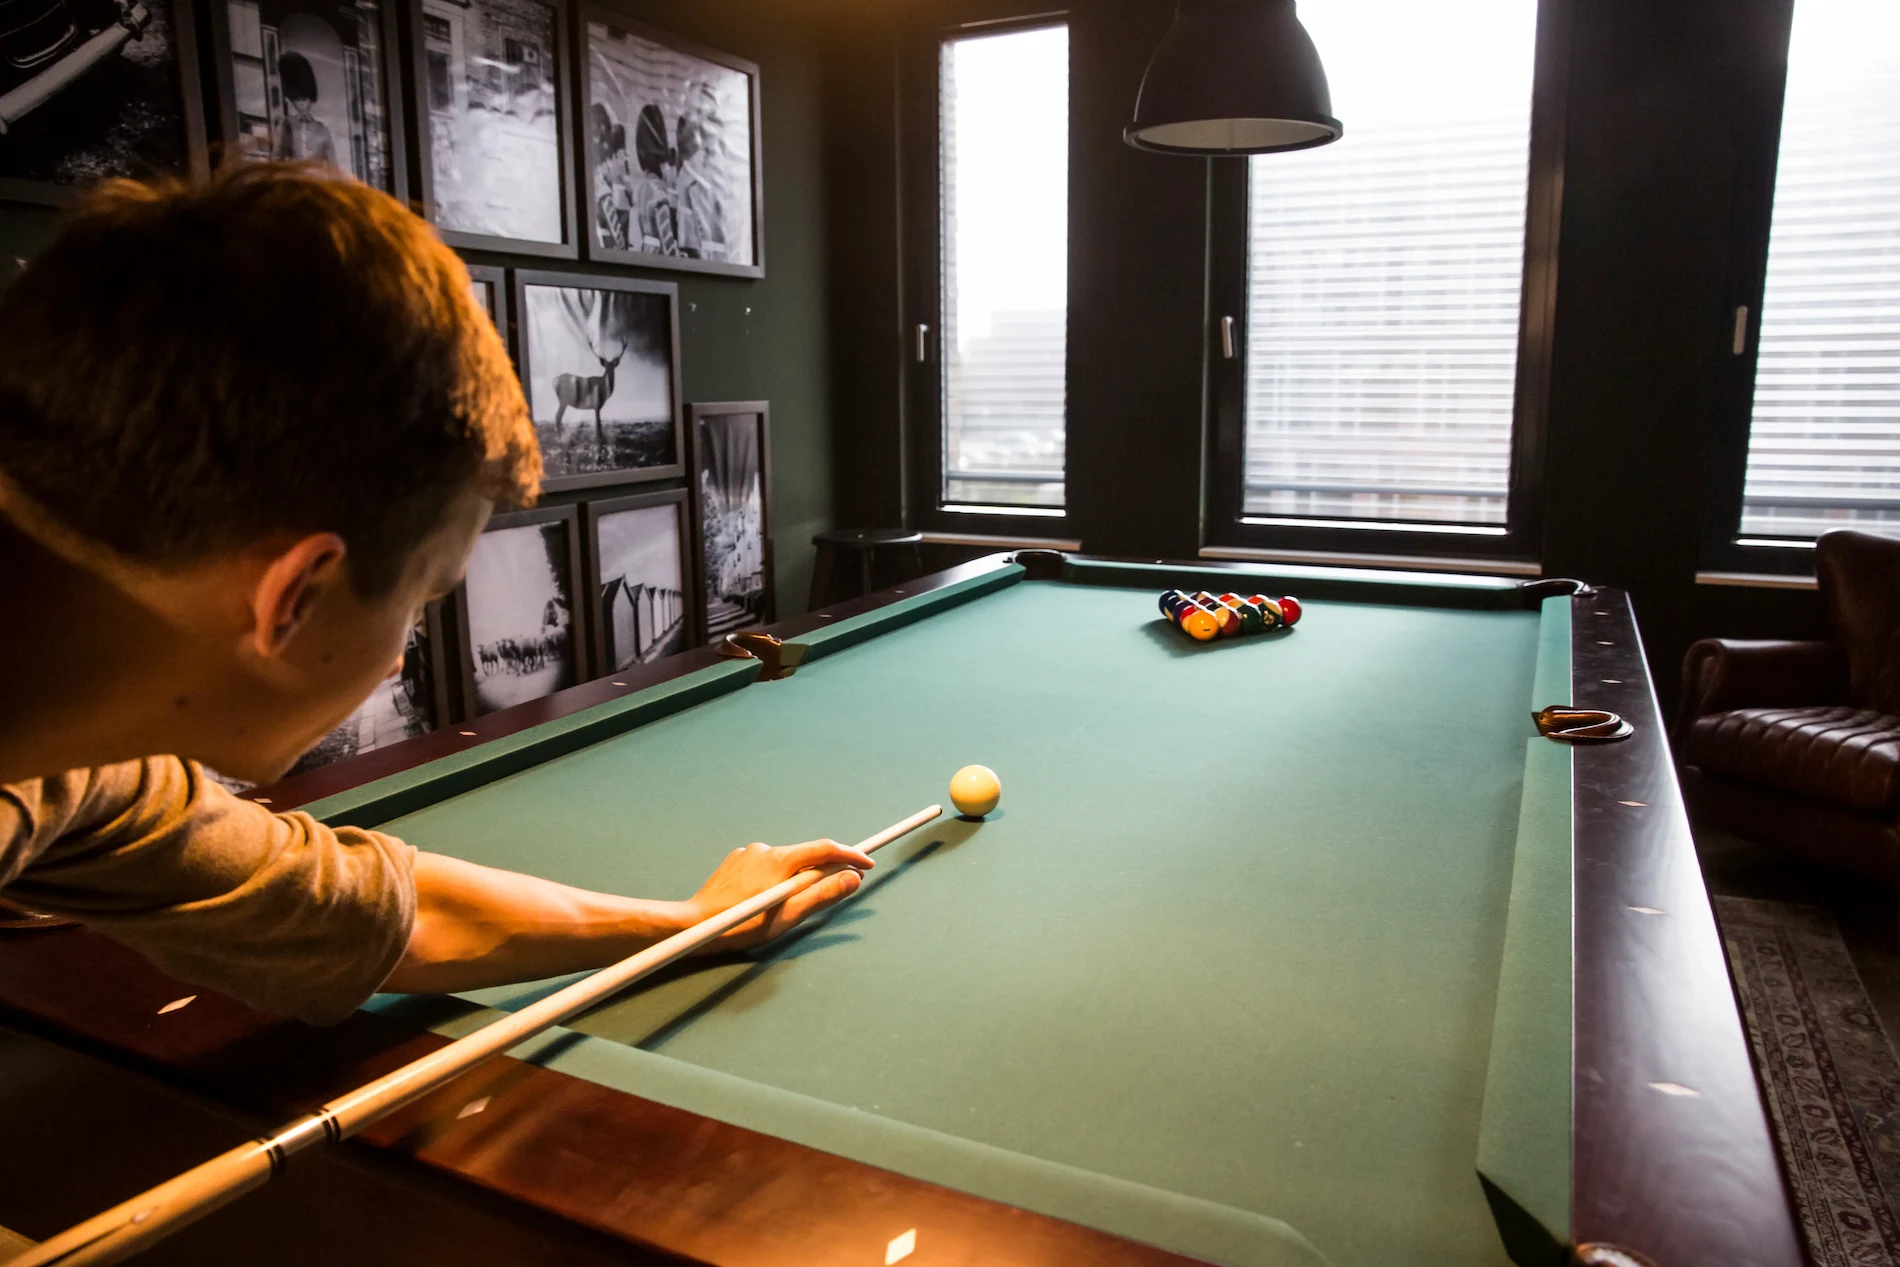 Mitarbeiter beim Billiard spielen in einer Arbeitswelt für informelle Austauschgespräche und After-Work-Sessions.